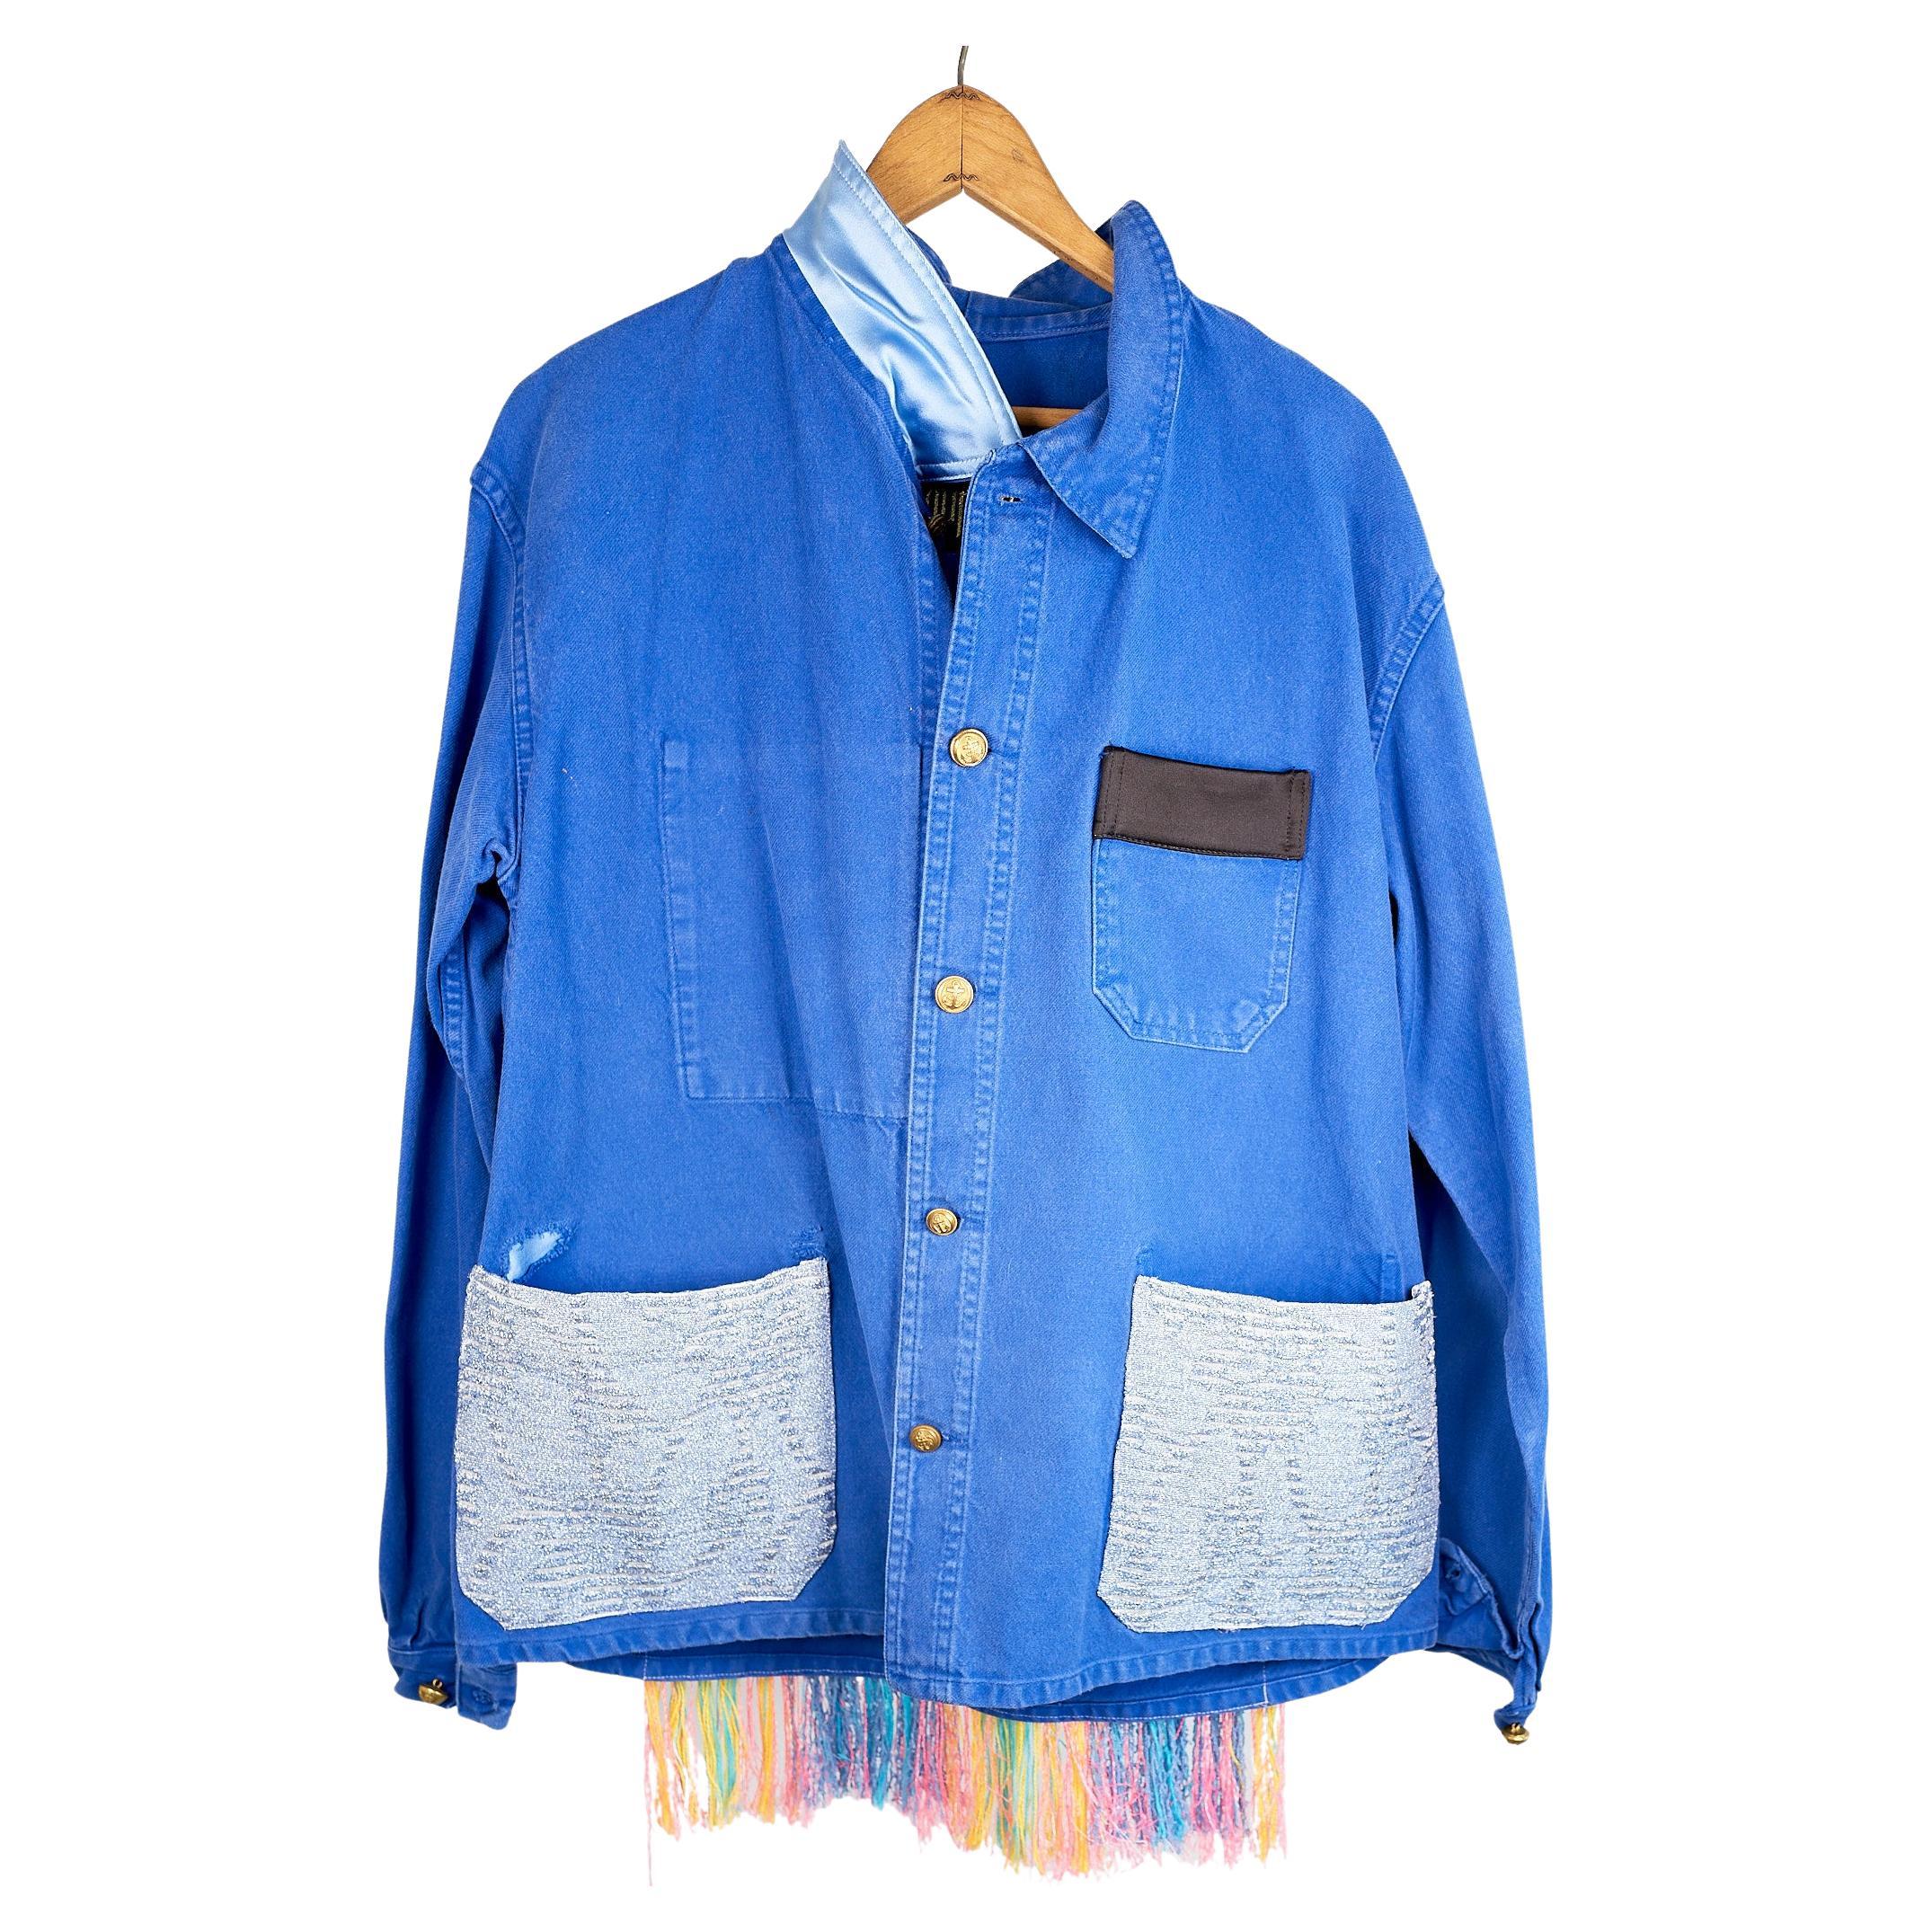 Cobalt Blue Jacket  Back Multi Color Pattern Fringes Glitter Pockets French Work